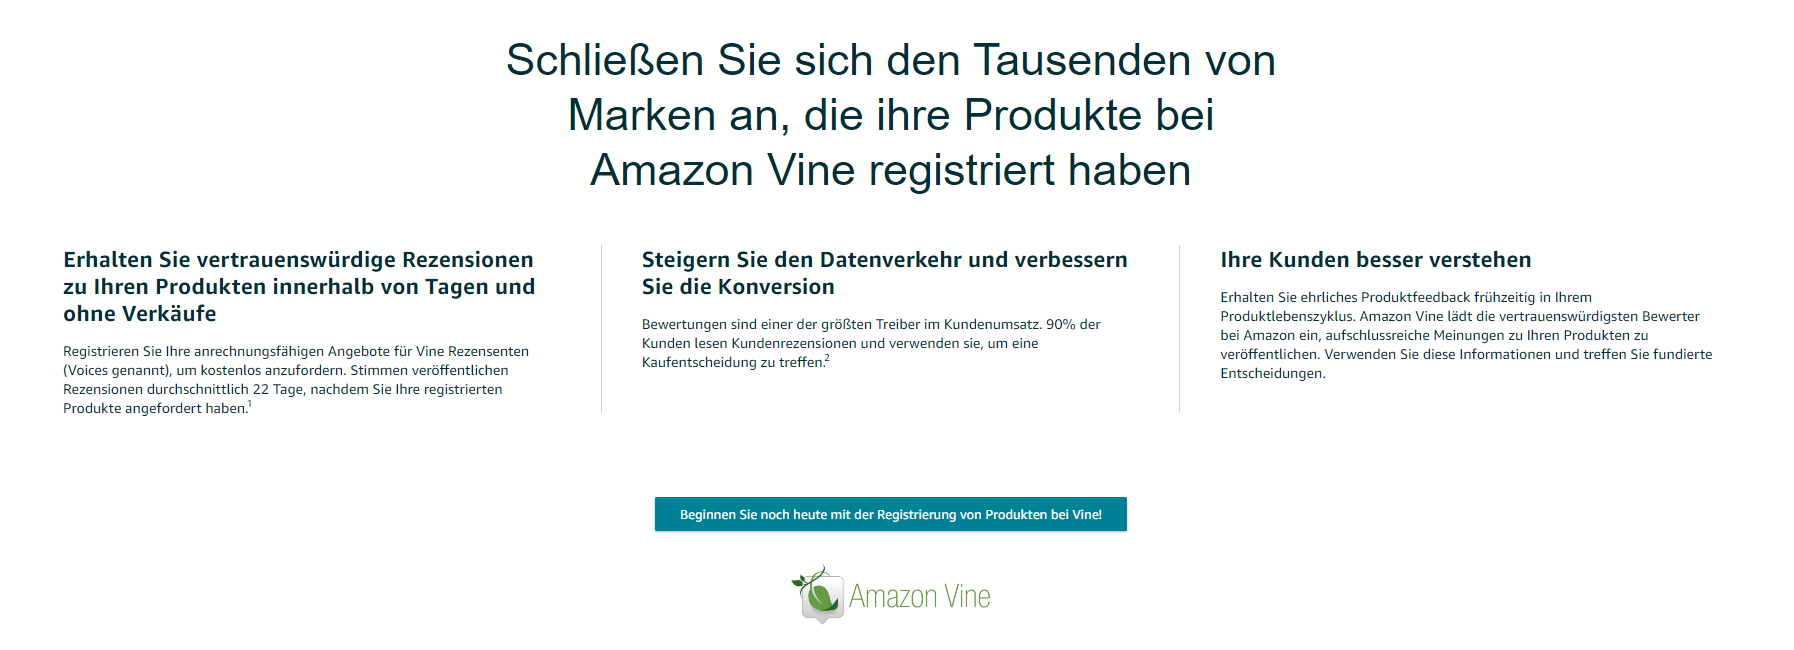 Amazon Vine Registrierung